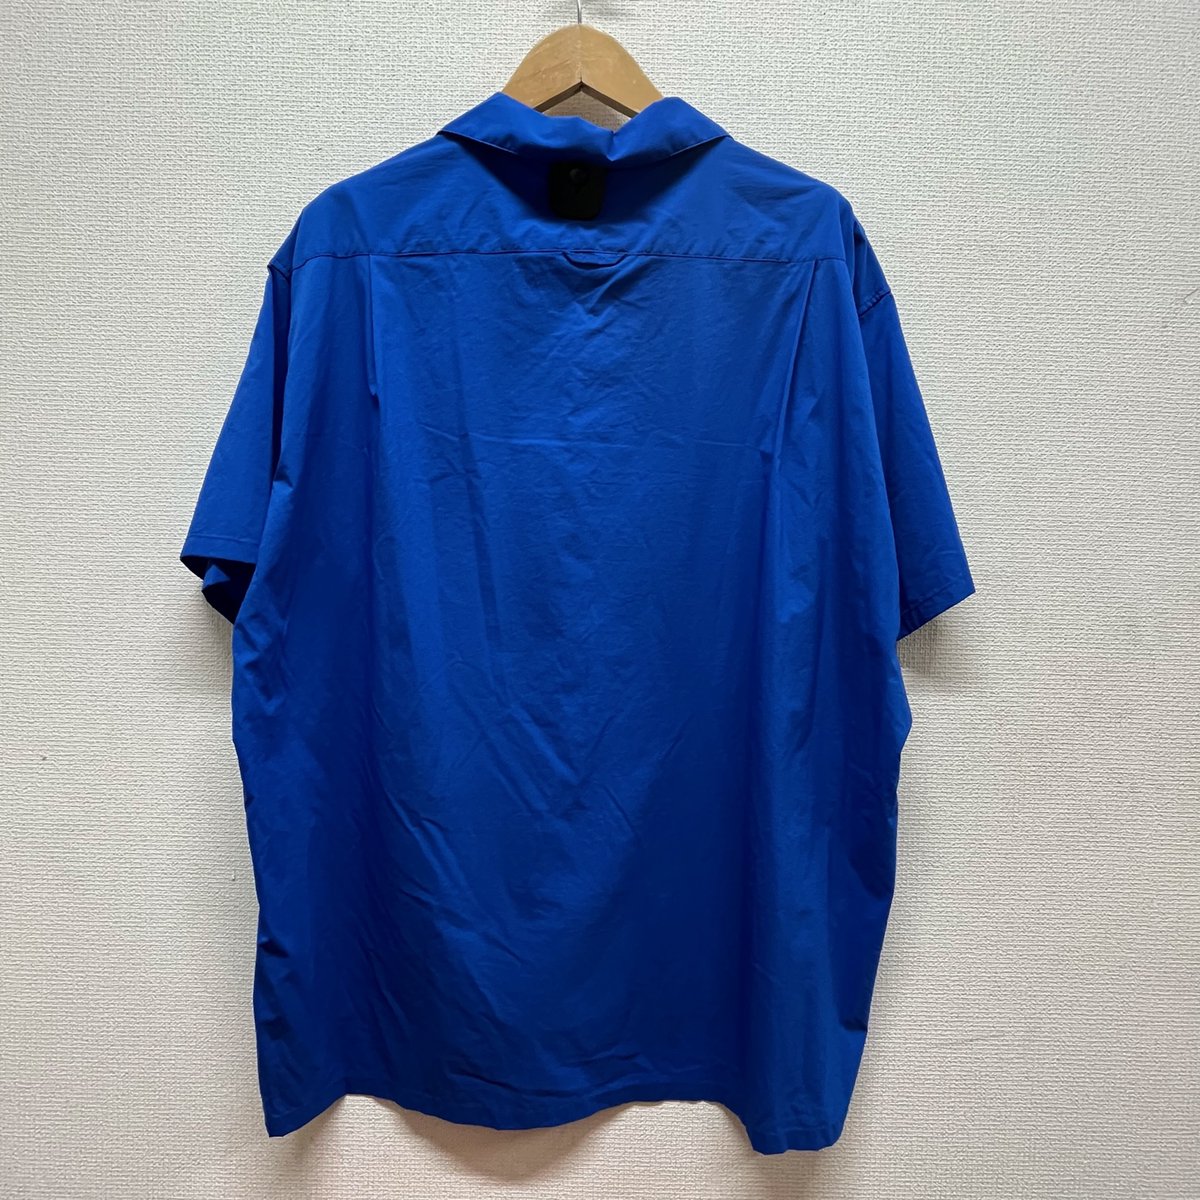 ドンドンダウン宇都宮鶴田店 on Twitter: "今日のオススメ💁 #山と道 UL Short Sleeve Shirt SIZE XL